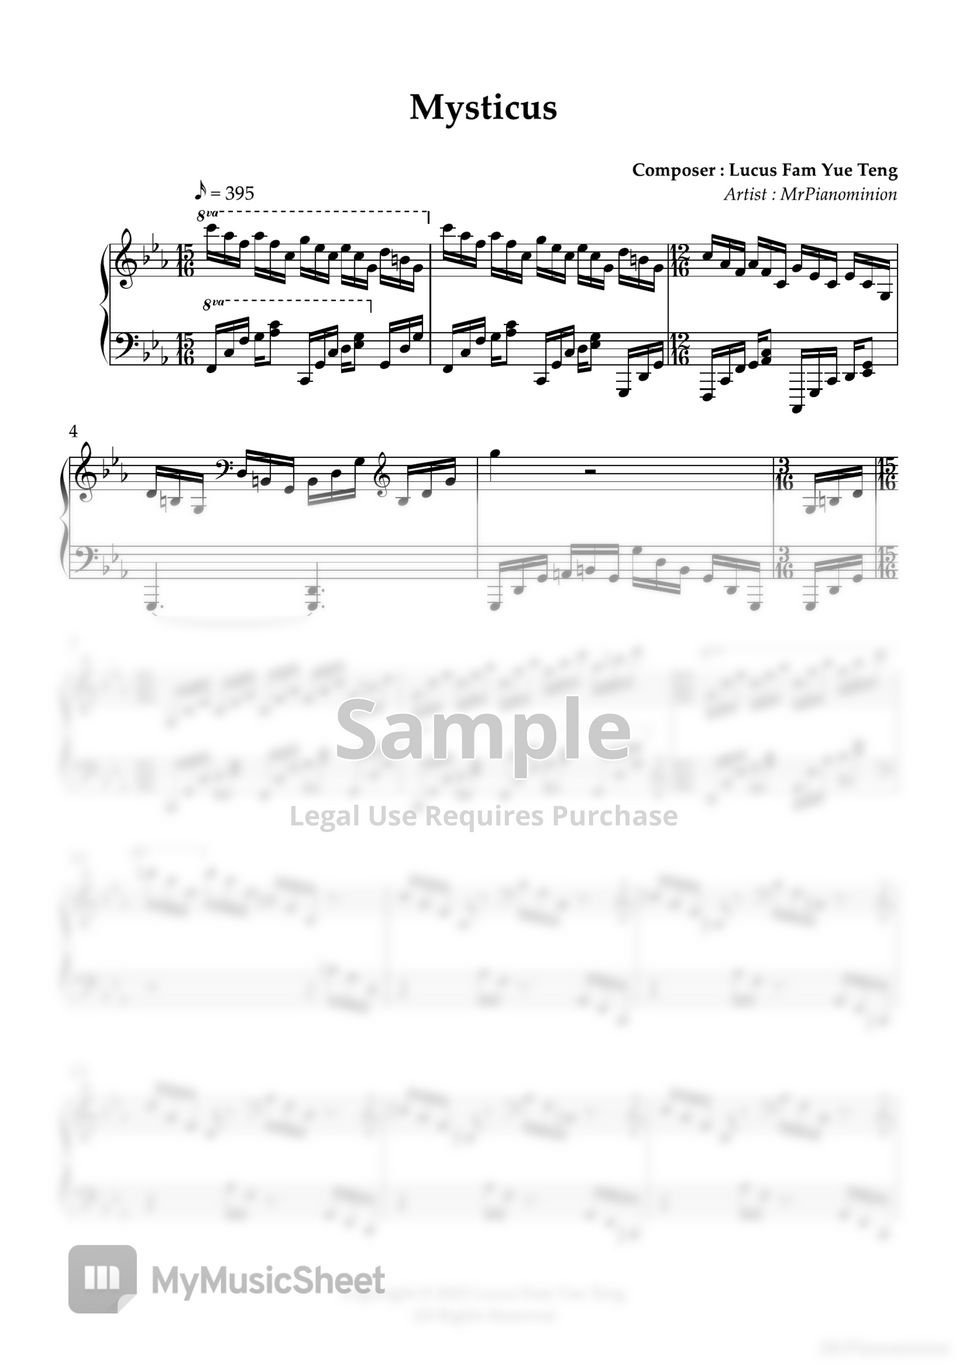 MrPianoMinion - Piano Exercise: Mysticus